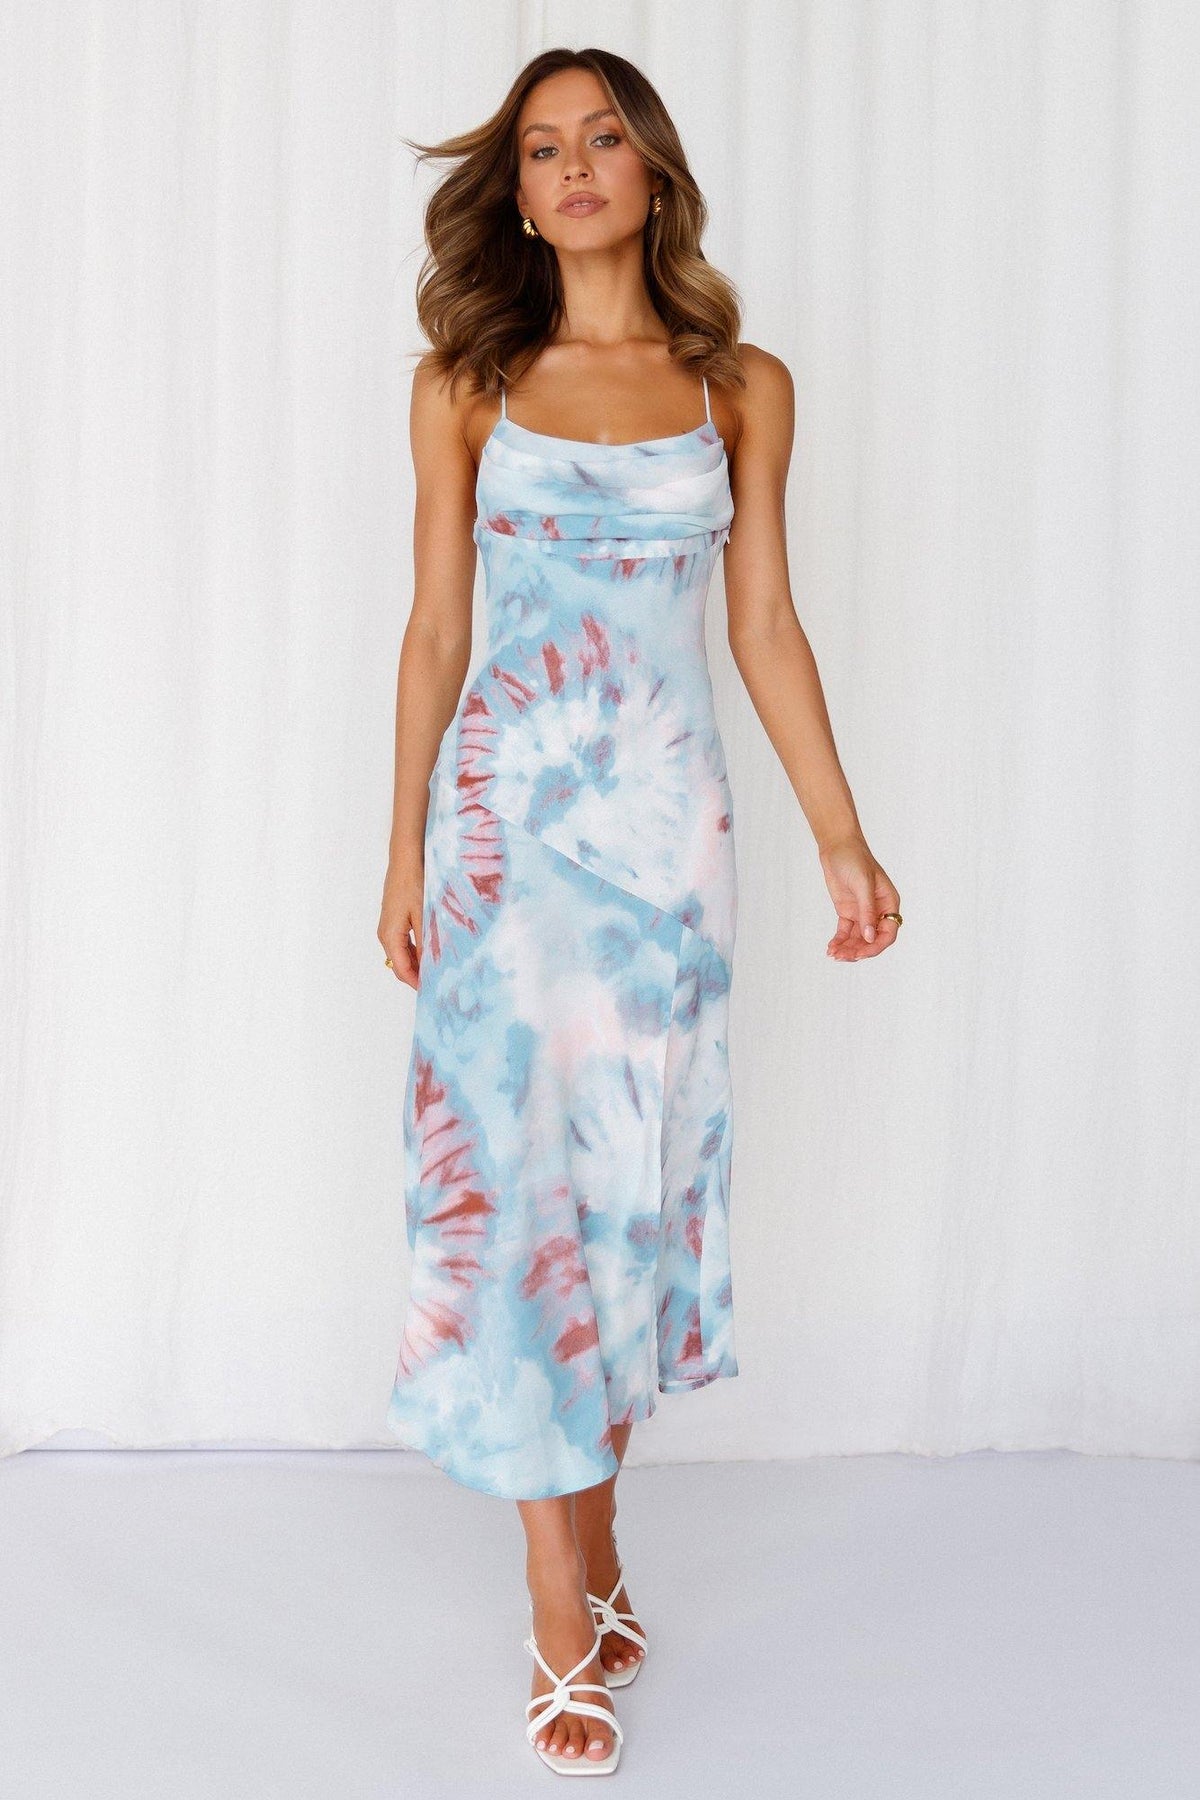 Shop Formal Dress - Who Do You Like Midi Dress Blue featured image